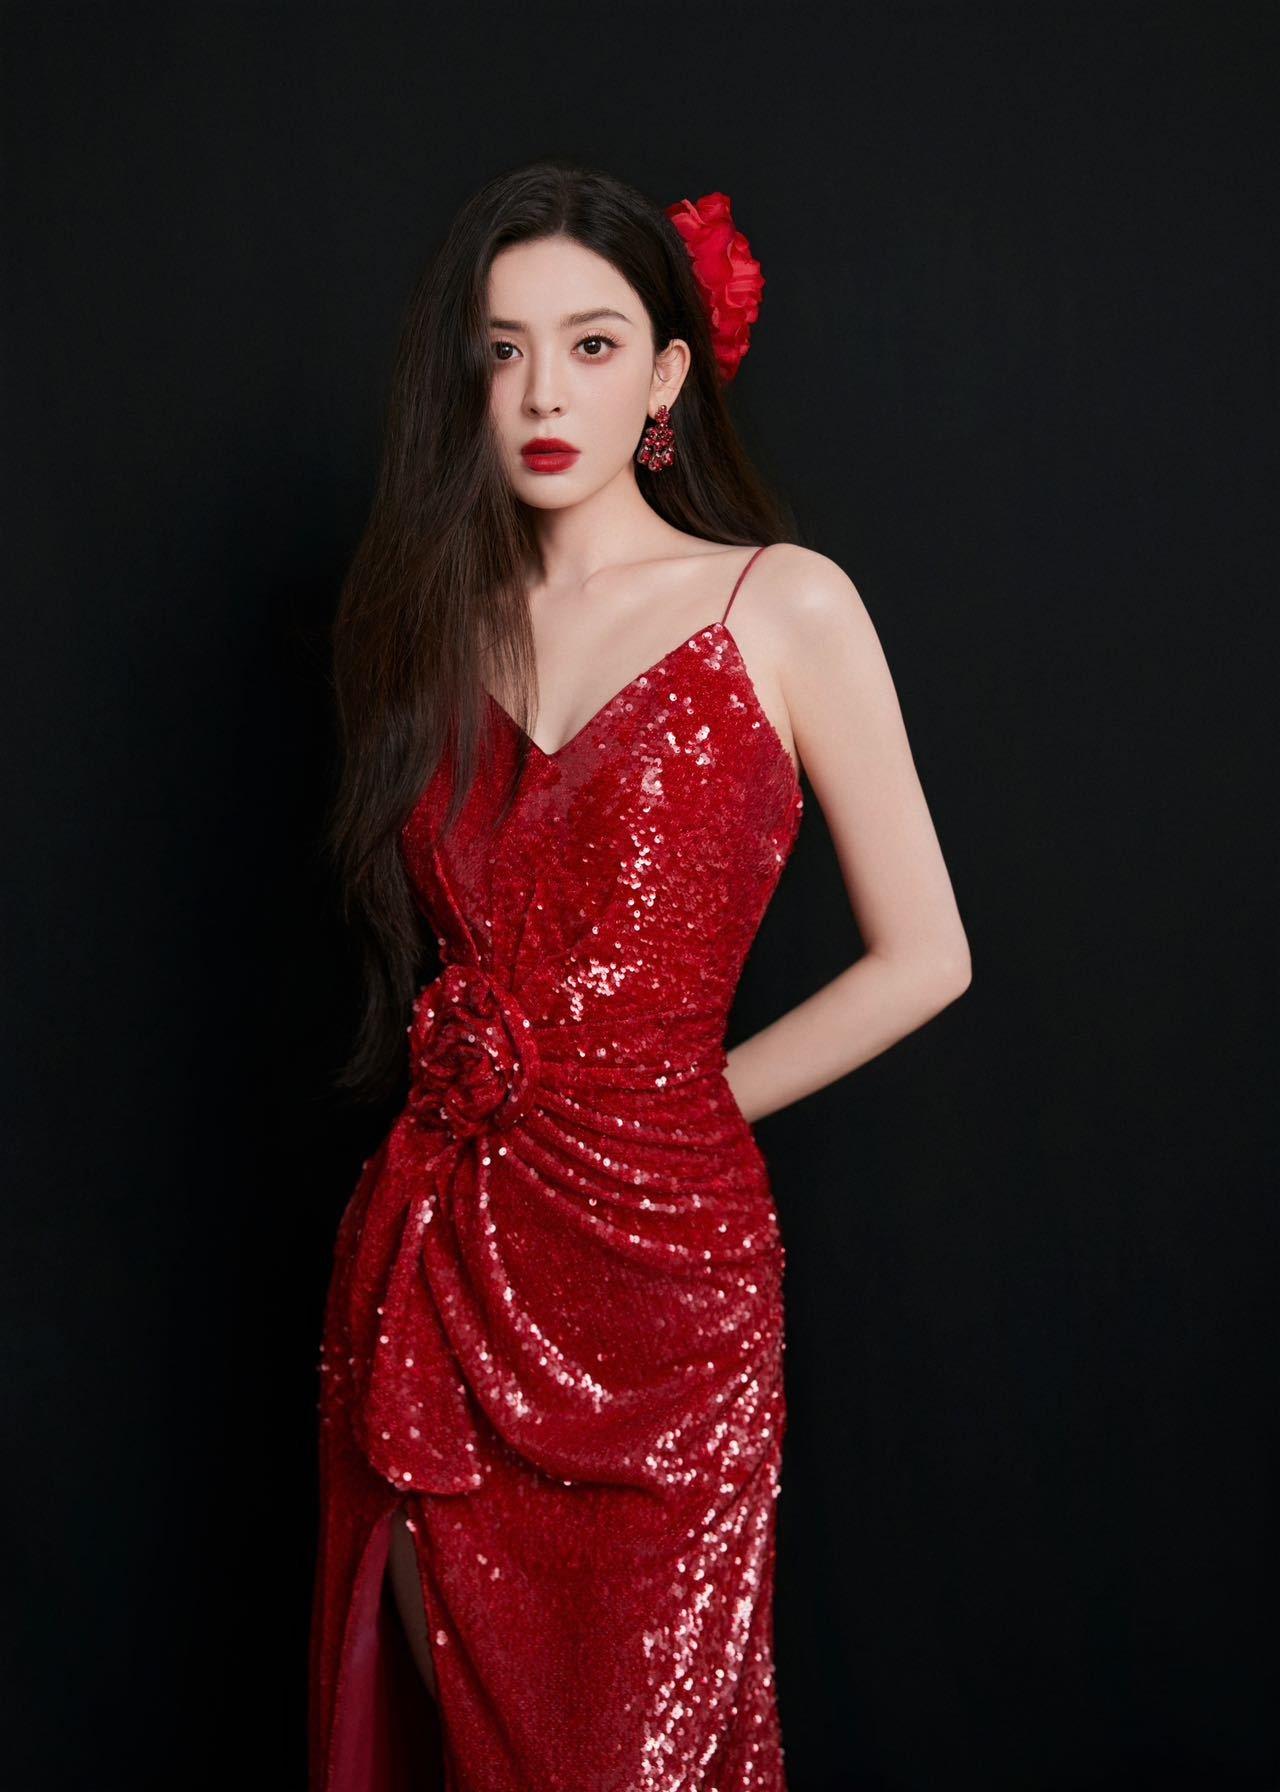 古力娜扎美照送达 红色吊带裸背礼服裙如明艳的红玫瑰,1 (1)